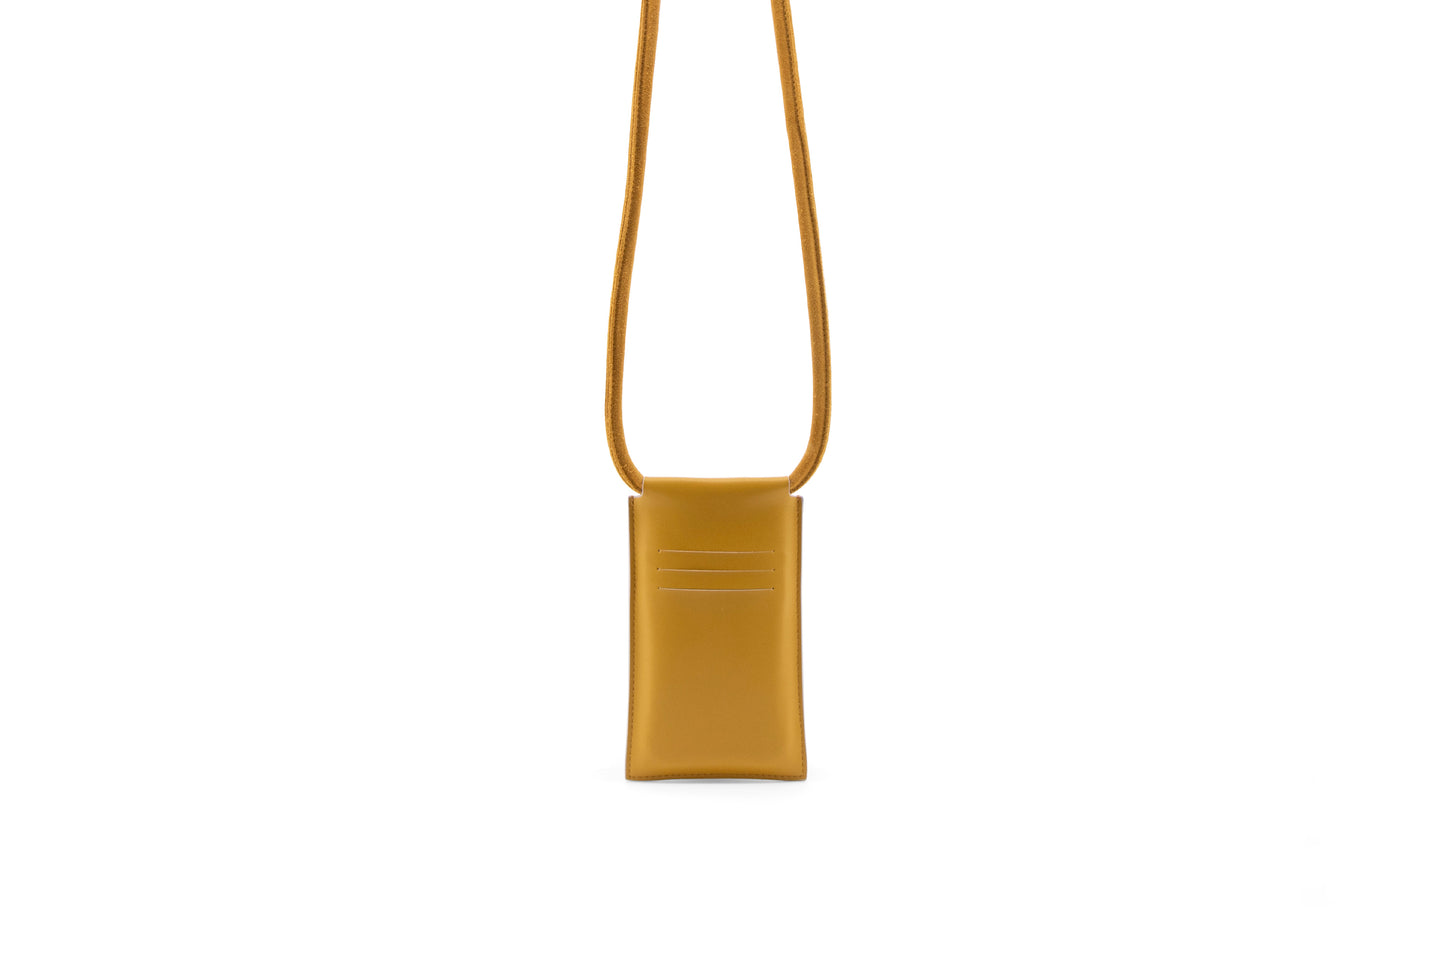 Telefoontas in goudgele kleur van Vegan leather. De tas heeft op de achterkant ruimte voor drie pasjes.